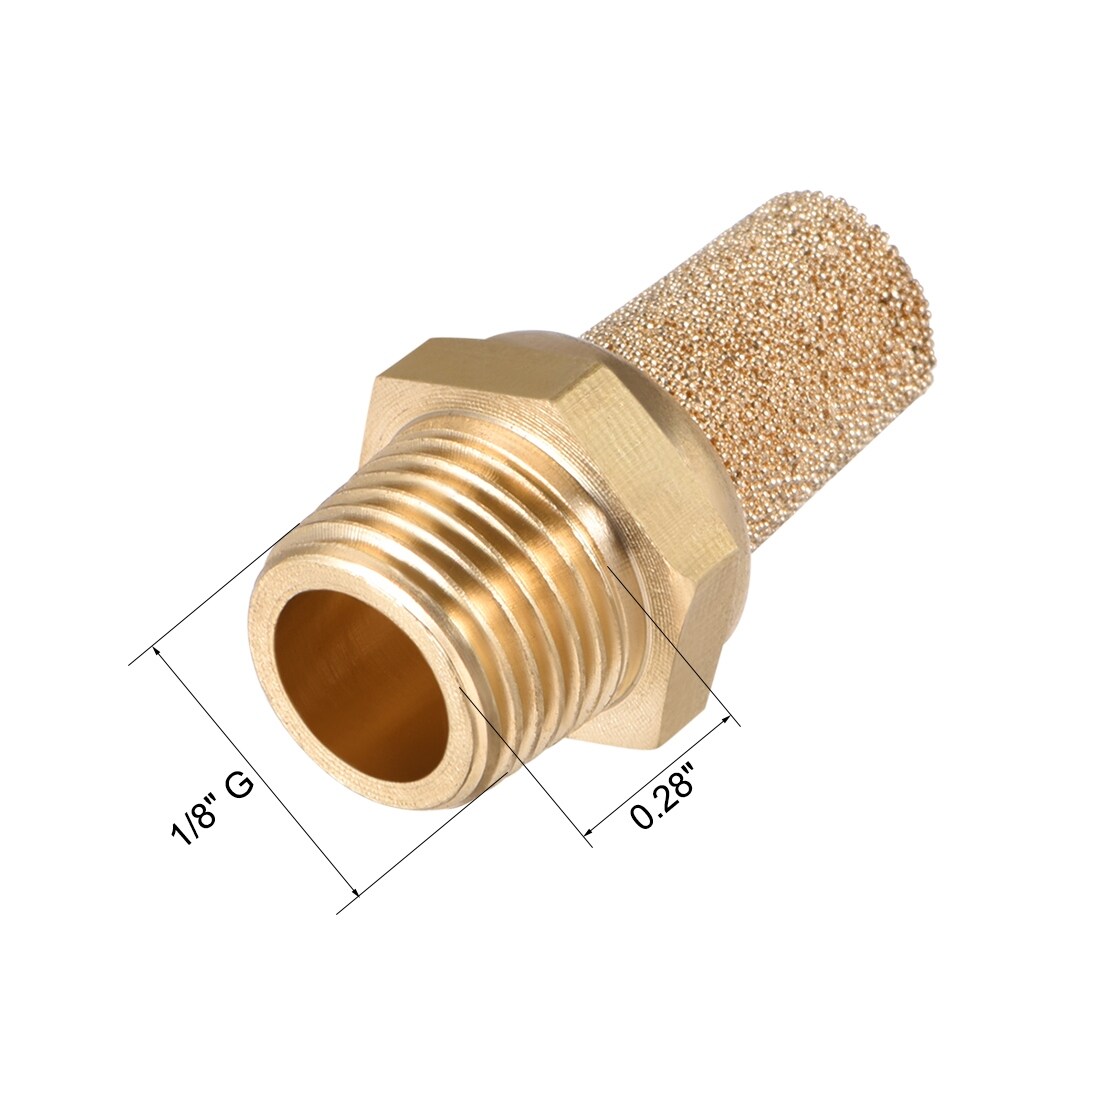 Details about   Brass Exhaust Muffler 1/8" G Male Thread Bronze Muffler w Brass Body Flat 5pcs 